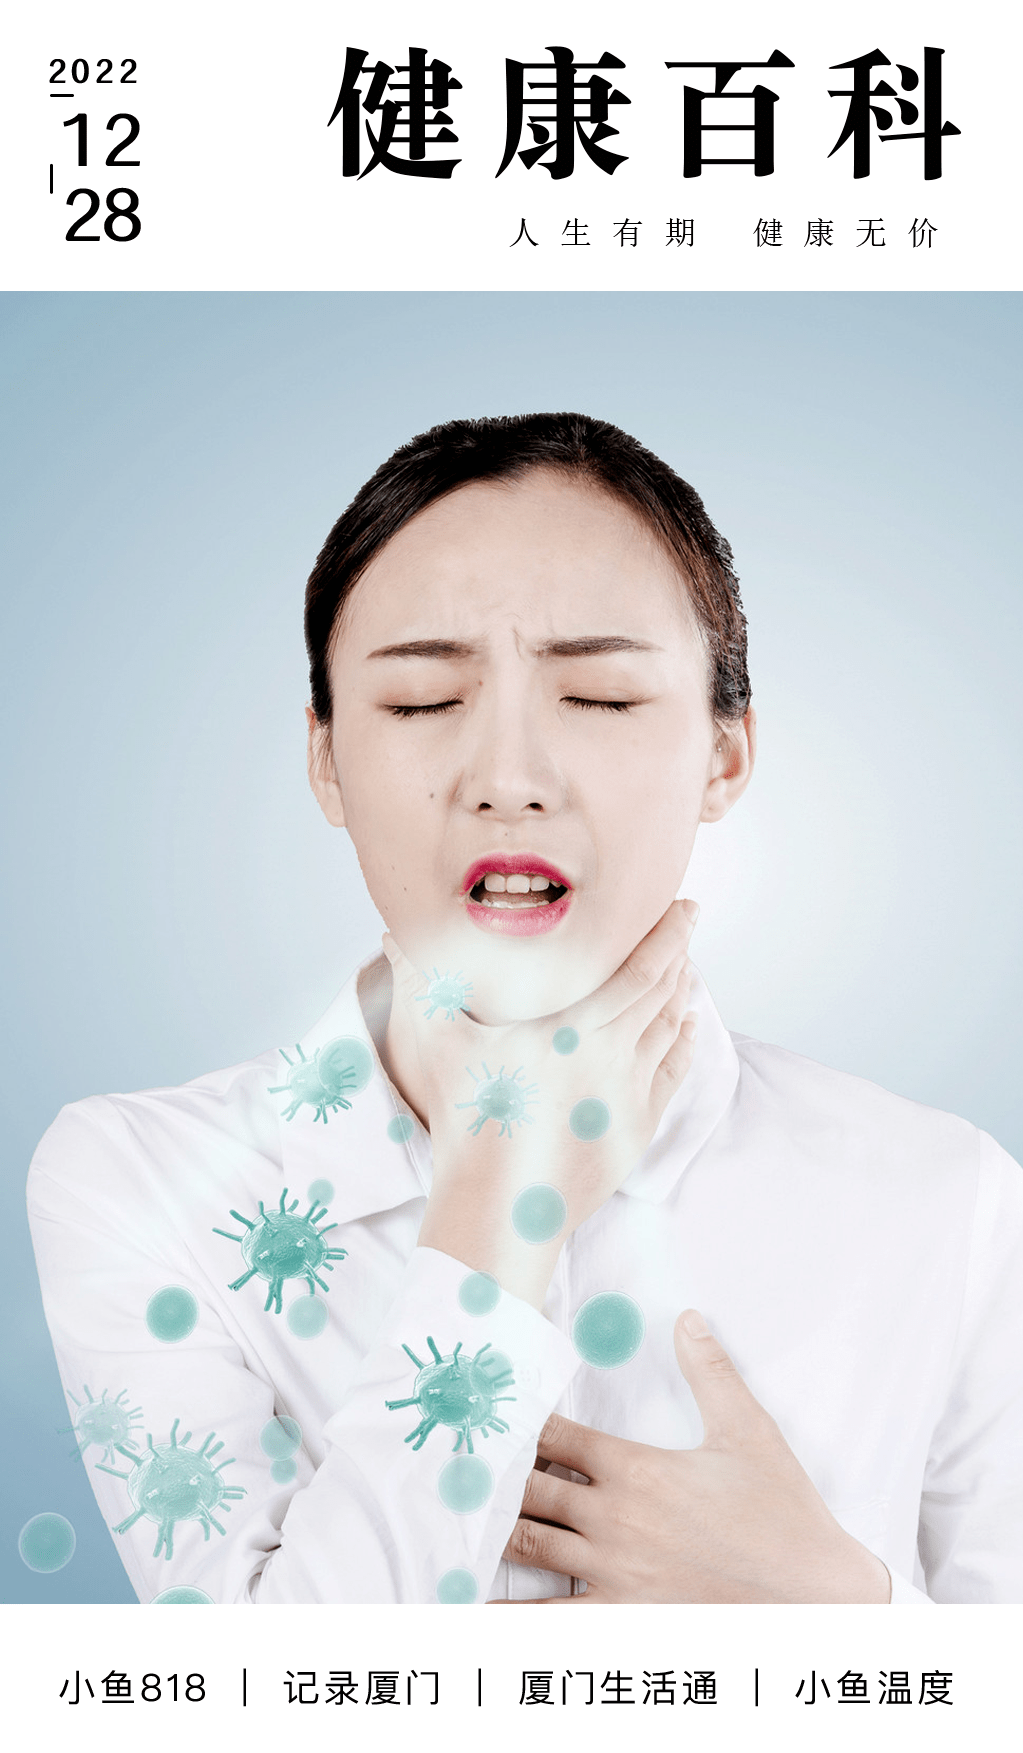 苹果5信号怎么调中文版:感染后你还在咳咳咳吗？一直咳嗽会引发肺炎吗？厦门人注意！千万别乱吃药！